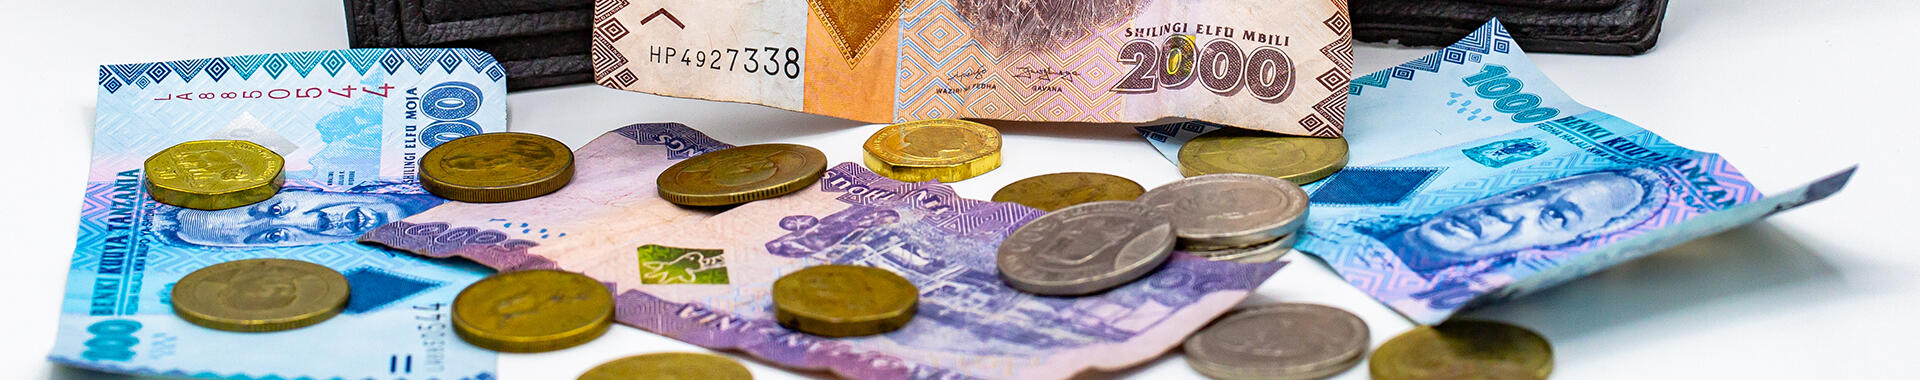 Tanzanian shillings. Image: Imani Nsamila / UNU-WIDER